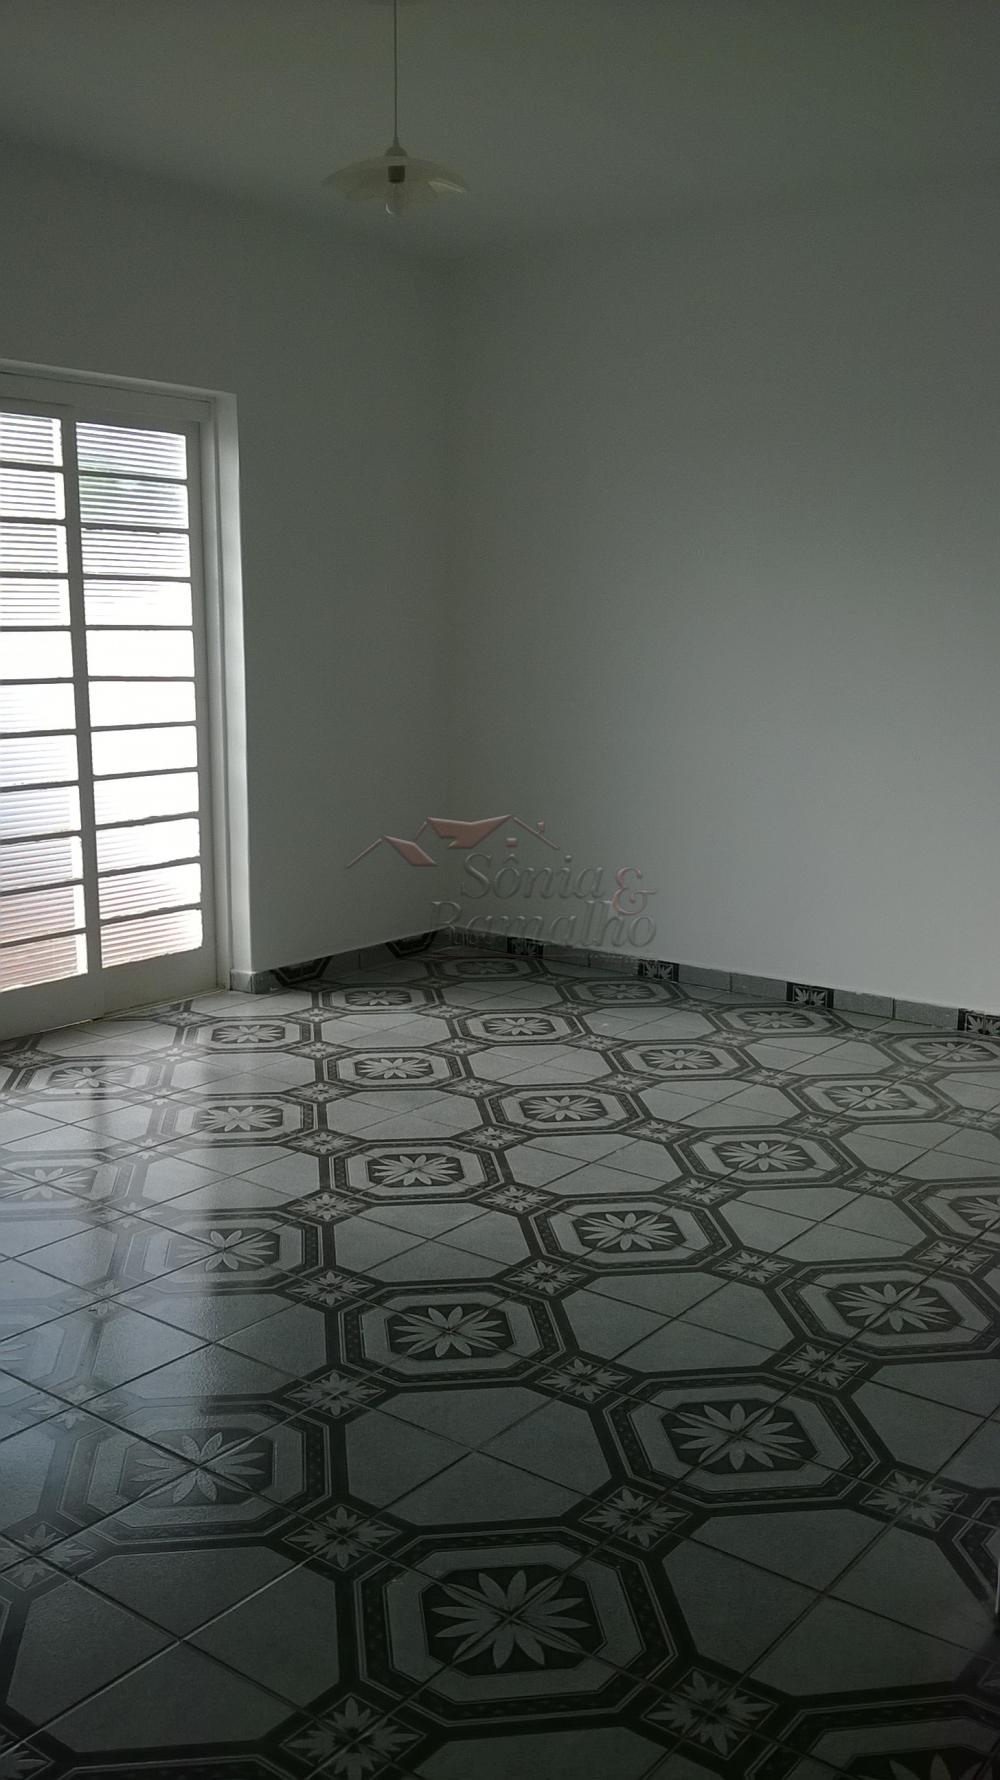 Alugar Casas / Padrão em Ribeirão Preto R$ 1.000,00 - Foto 2